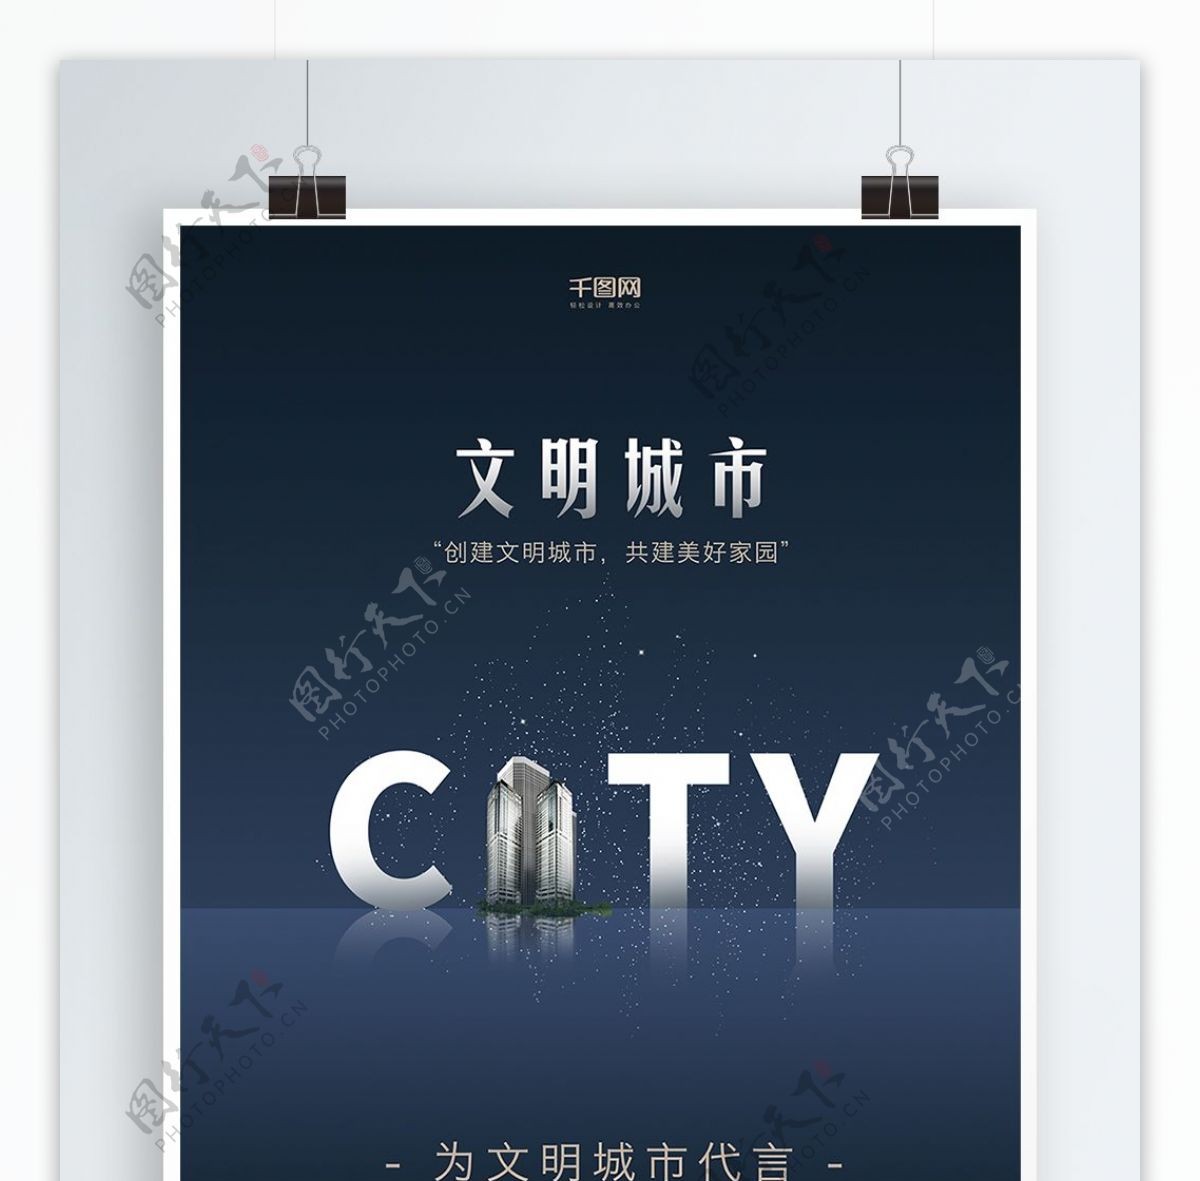 深蓝色创意字体文明城市公益海报简约大气创意CITY文明城市宣传海报设计